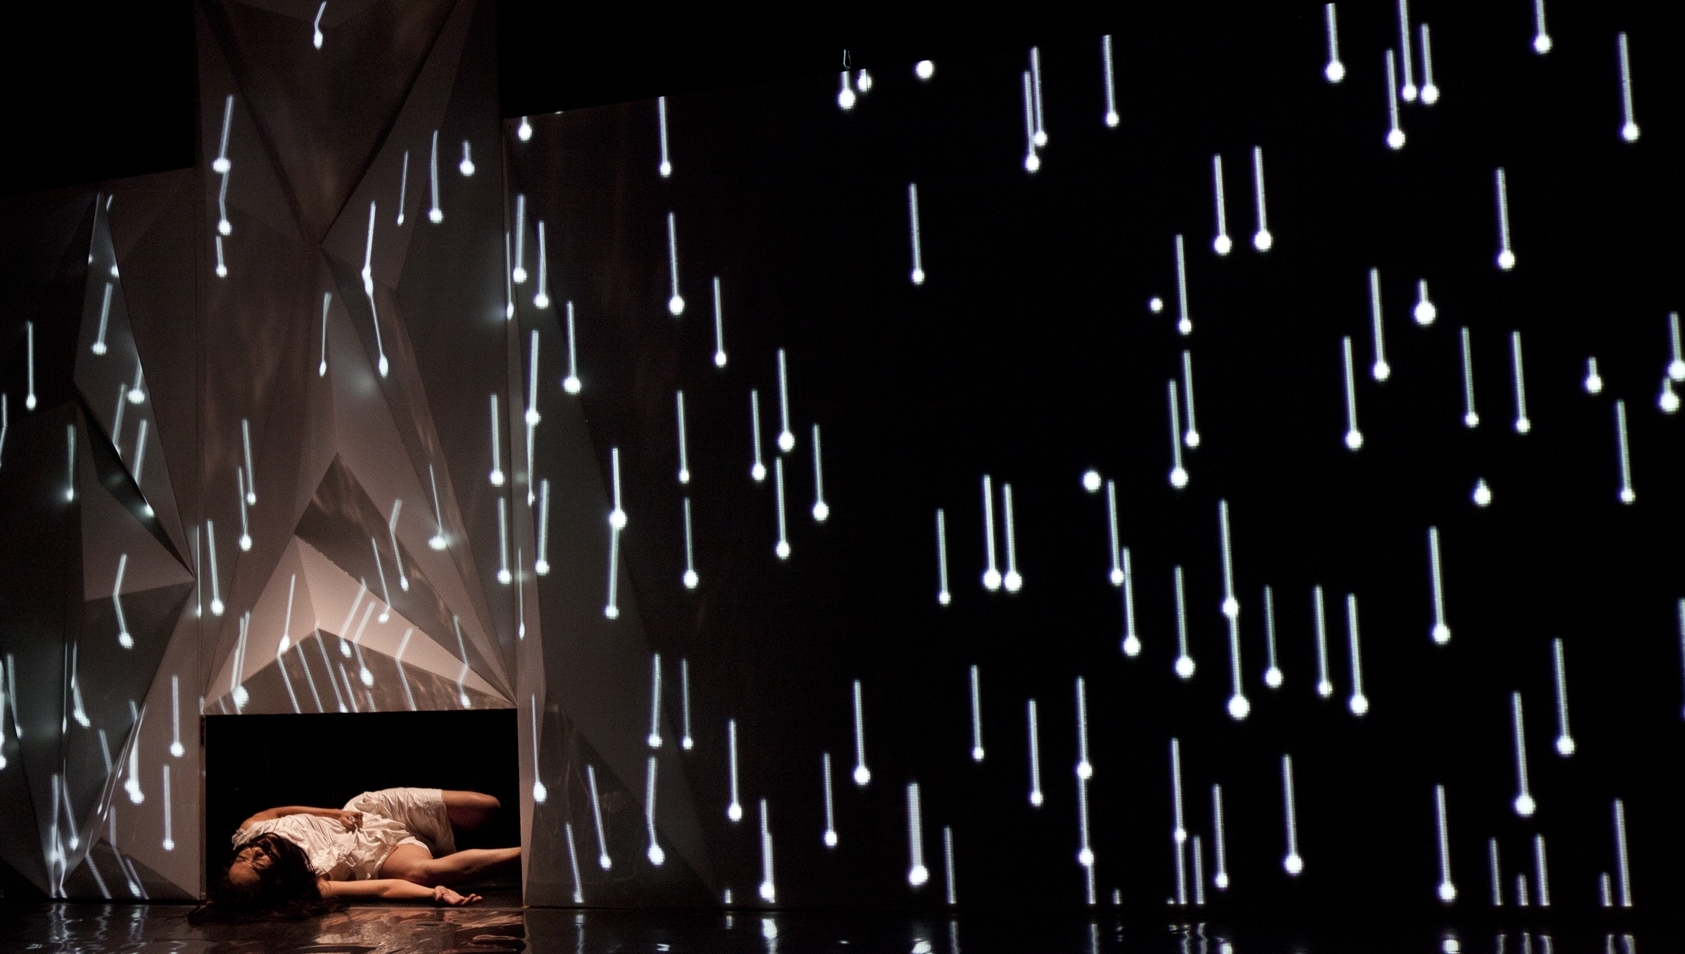 2010第三屆新人新視野陳雪甄作品《廢墟》，作品結構與情節扼要簡單，搭配投影畫面互動形式，肢體表演精準，透露關懷的情感。